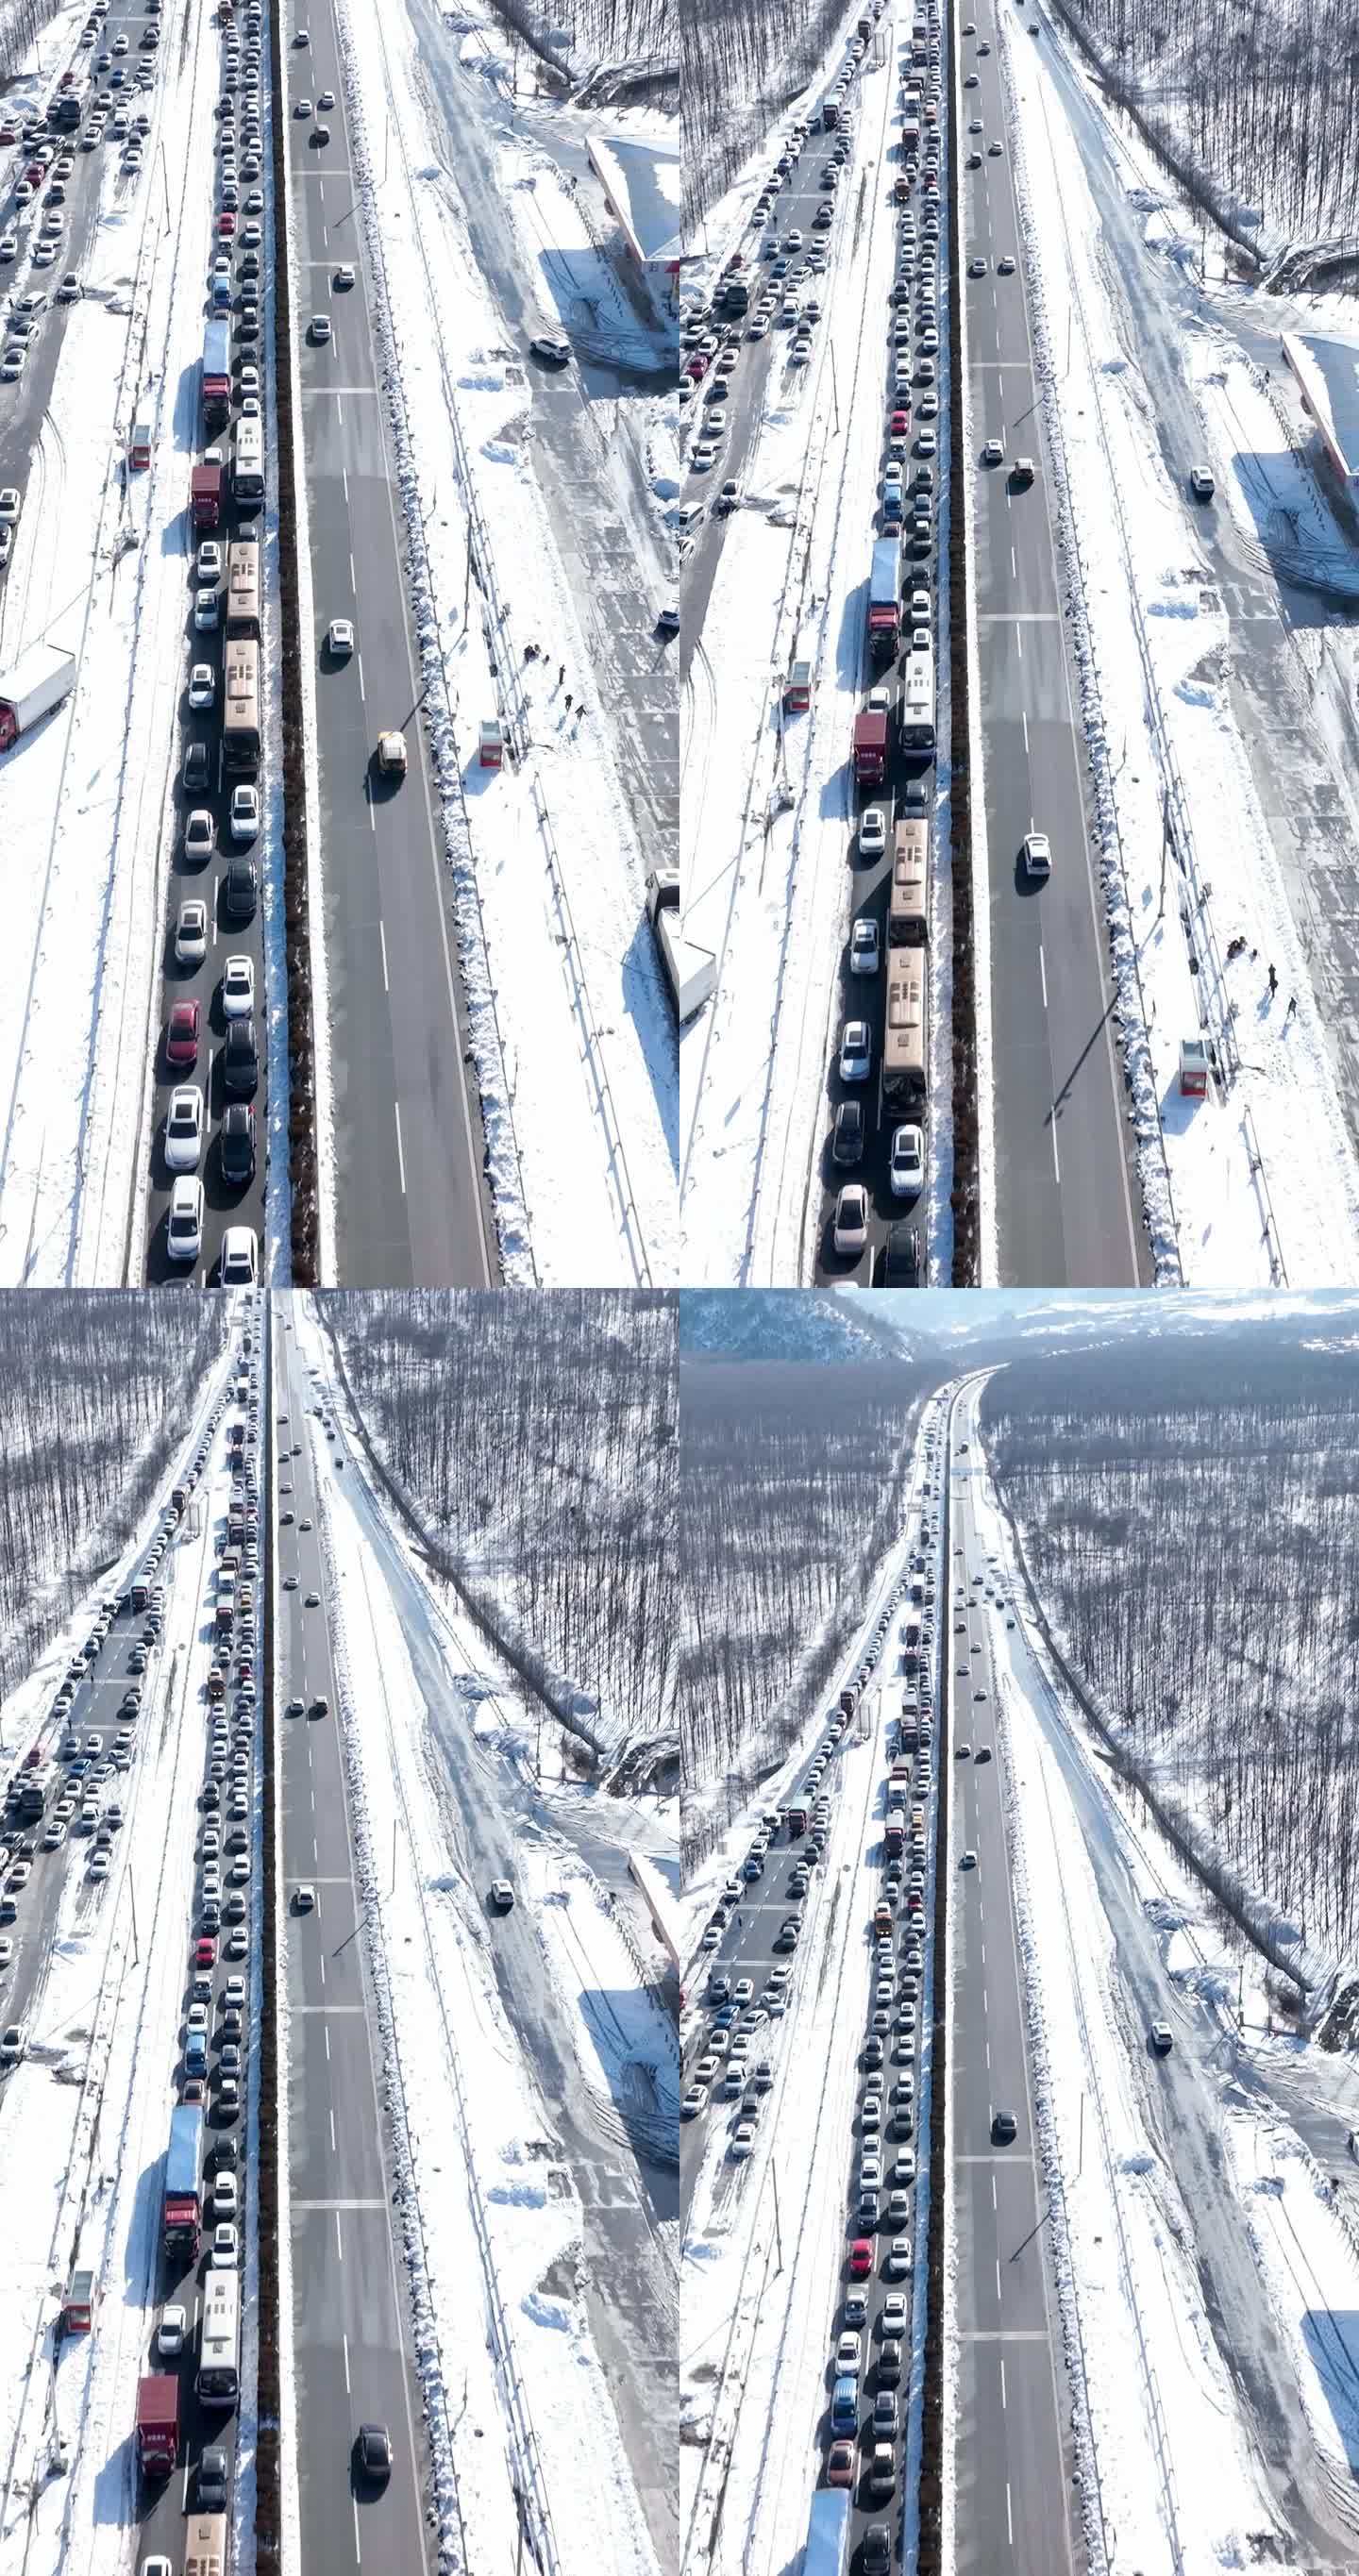 大雪极端天气造成高速公路堵车交通拥堵